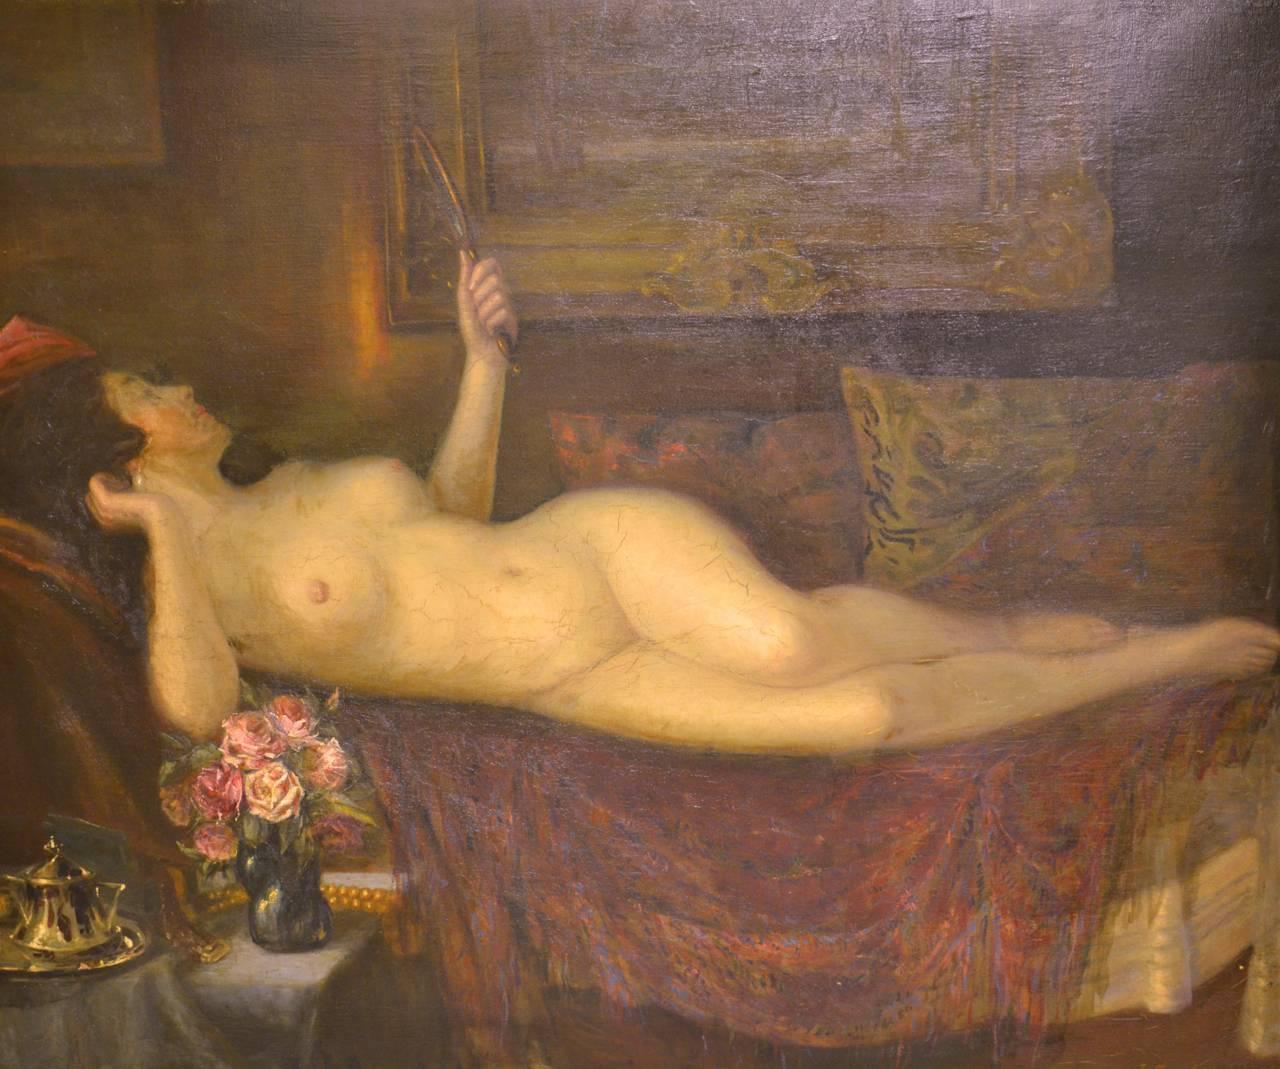 Nude Painting Jan Wysocki - Femme nue couchée avec miroir et roses GRANDE peinture à l'huile 19e siècle ARTISTE POLONAIS